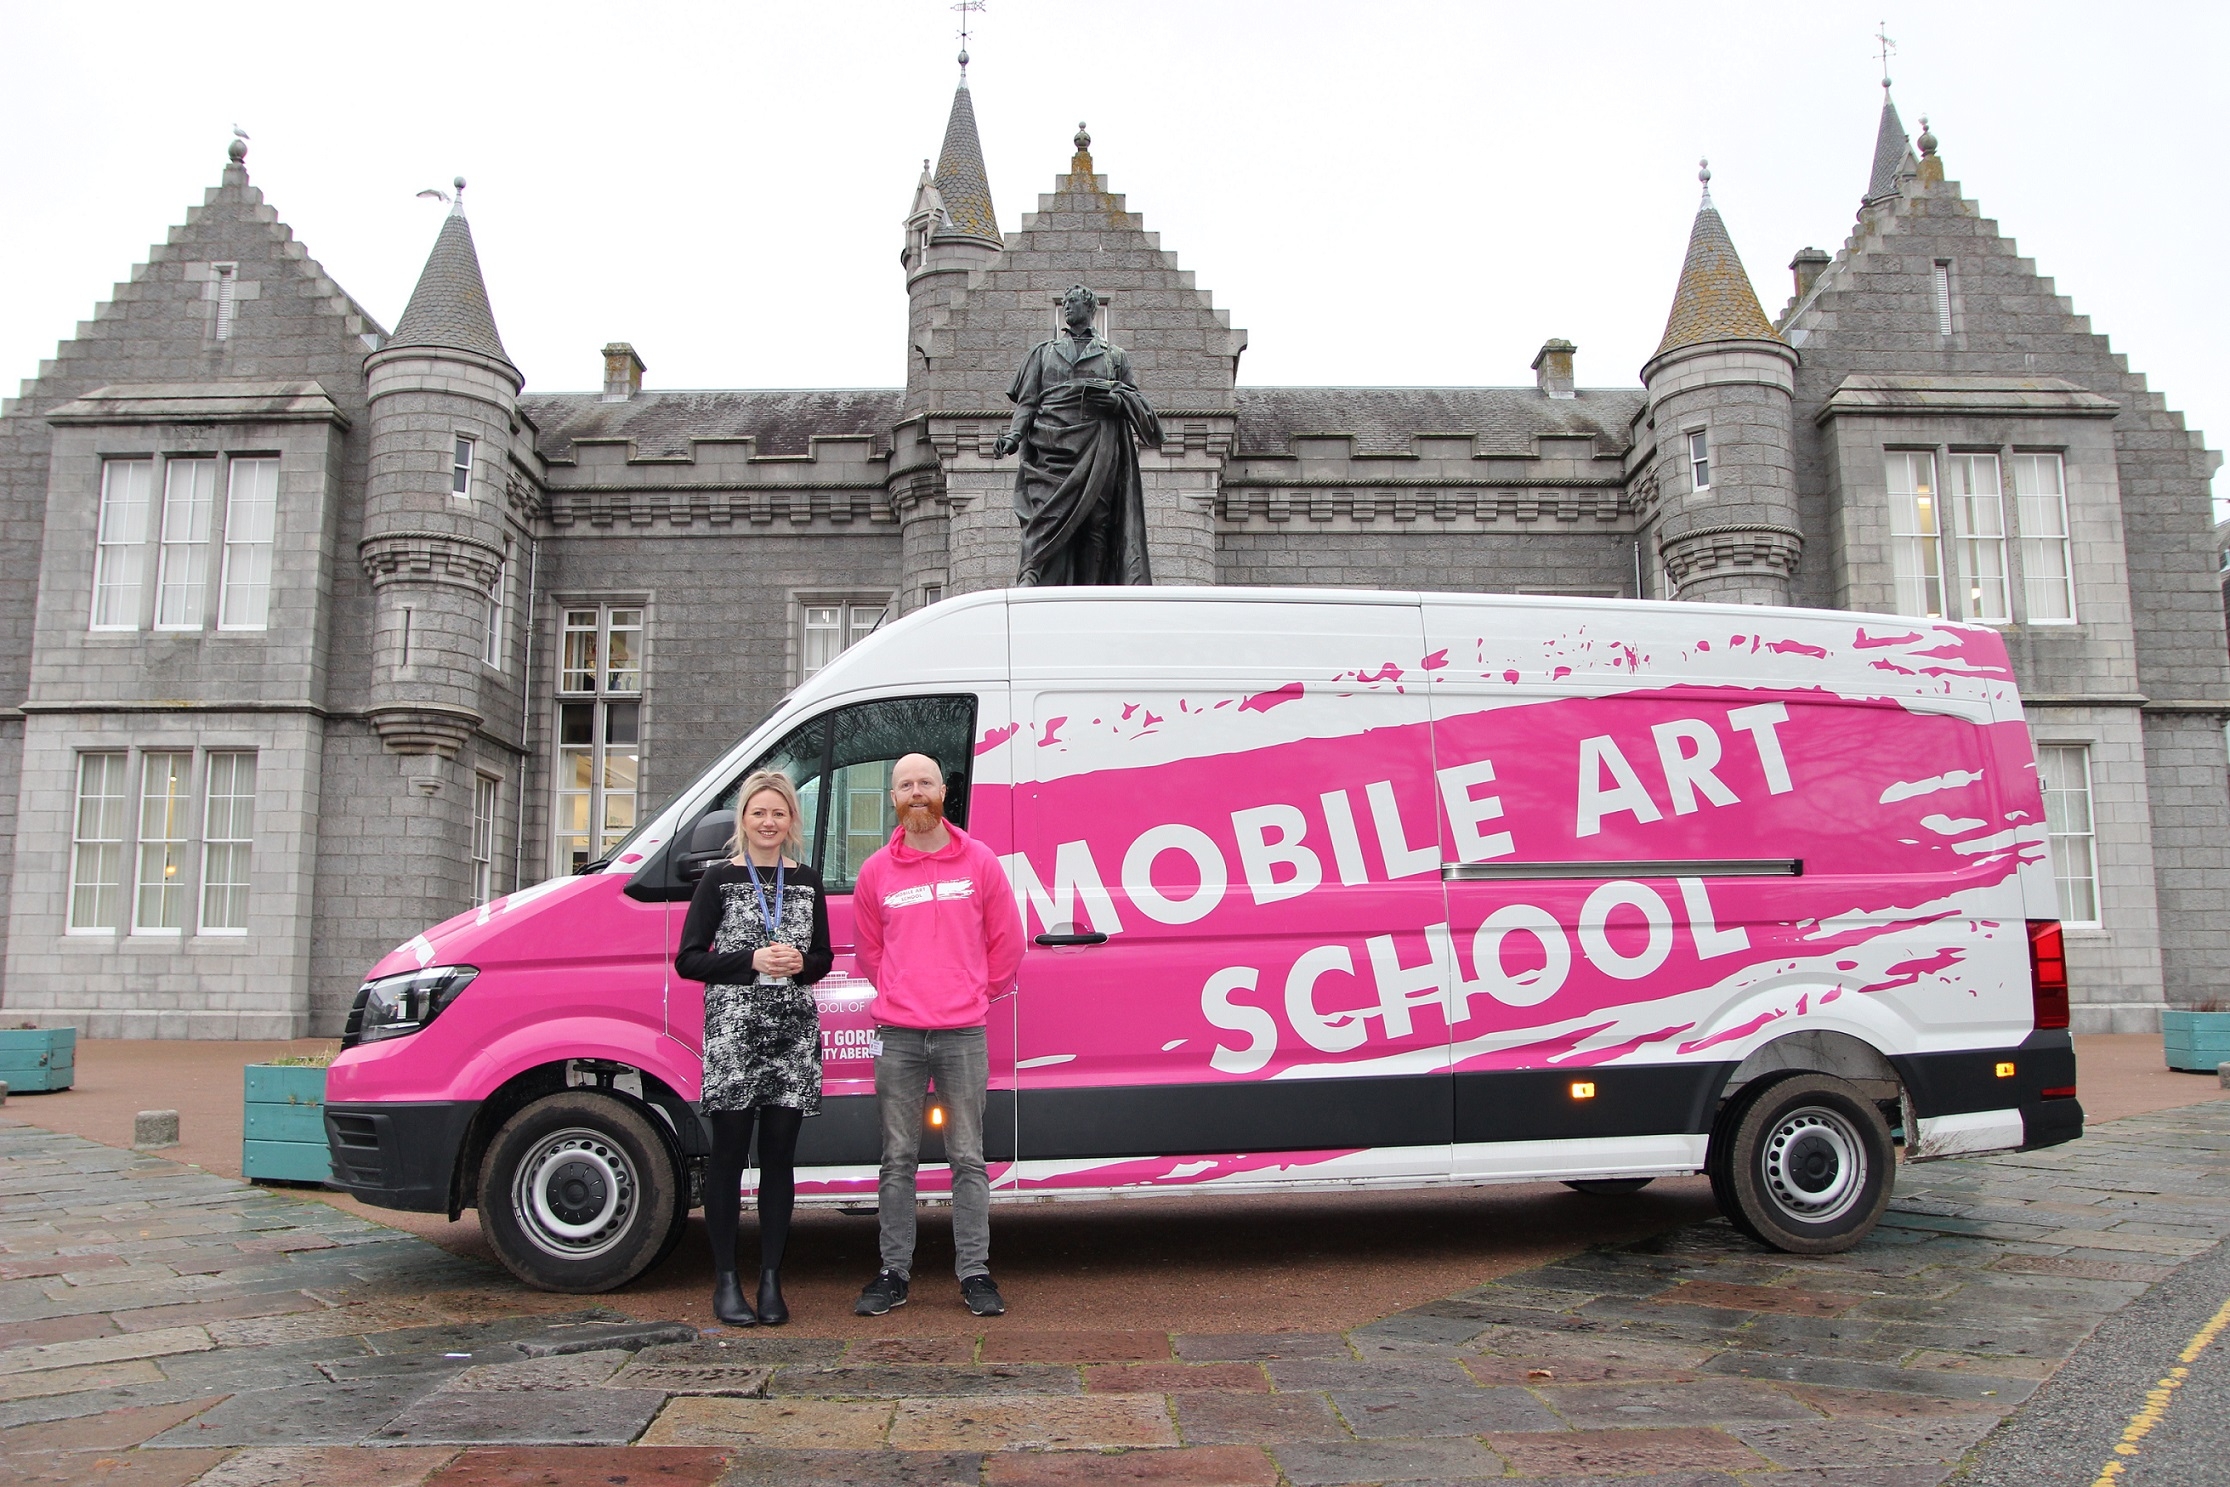 Mobile Art School van outside Aberdeen Grammar School